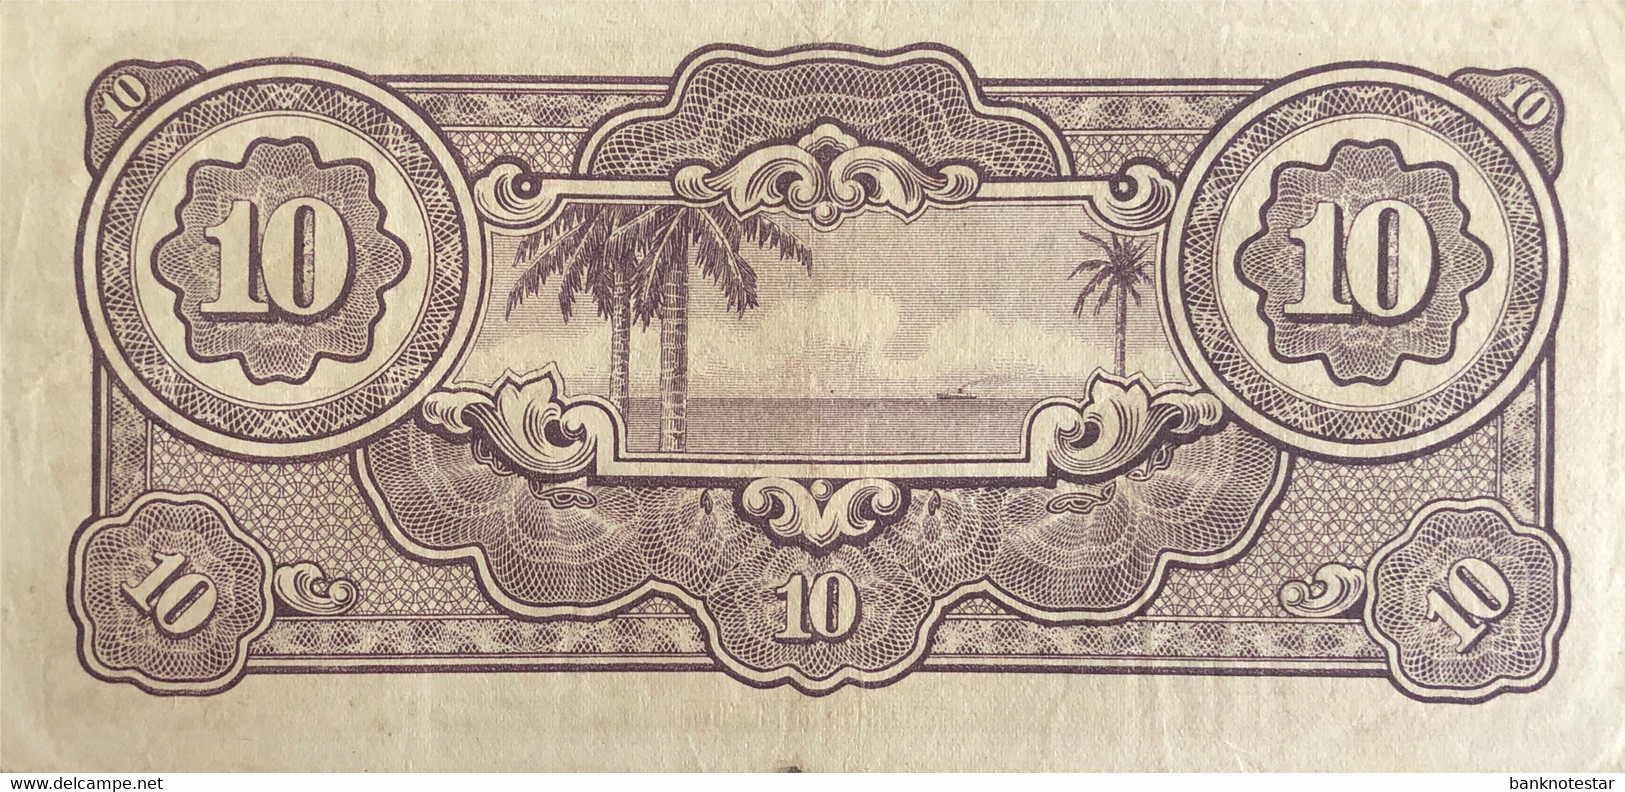 Netherland Indies 10 Gulden, P-125b (1942) - Very Fine - Indes Néerlandaises